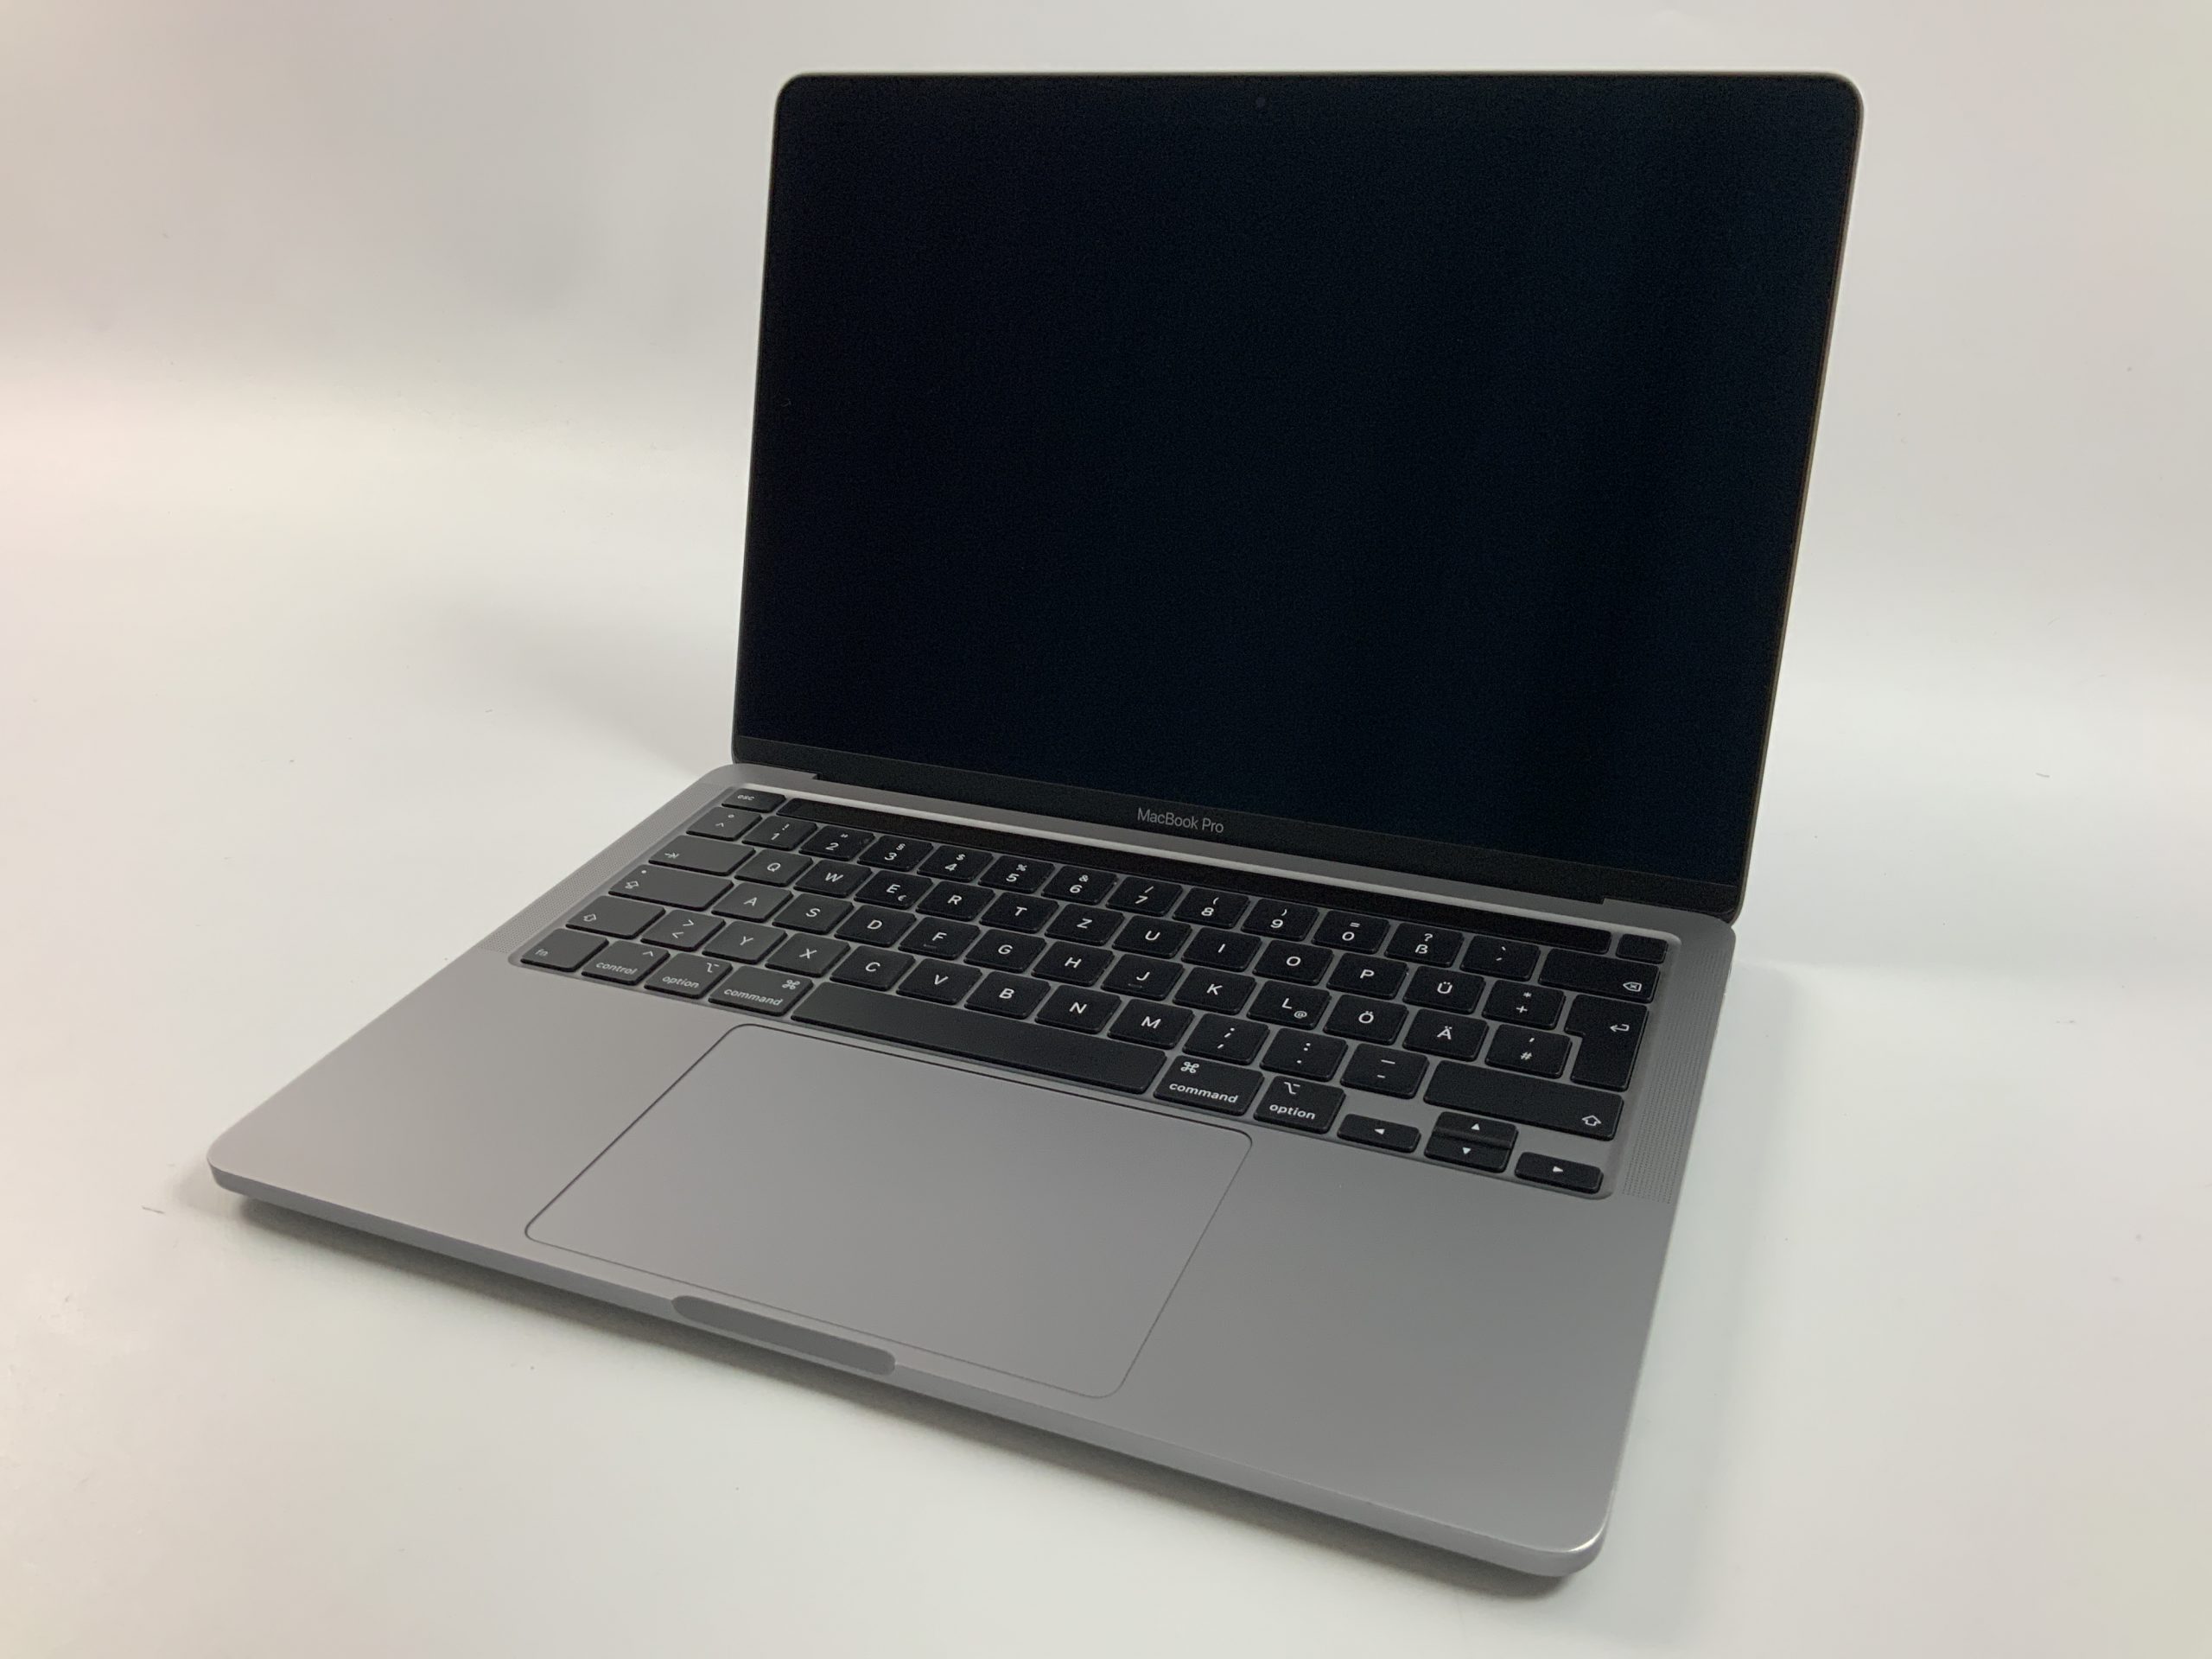 MacBook Pro 13" 4TBT Mid 2020 (Intel Quad-Core i5 2.0 GHz 16 GB RAM 1 TB SSD), Space Gray, Intel Quad-Core i5 2.0 GHz, 16 GB RAM, 1 TB SSD, Bild 1